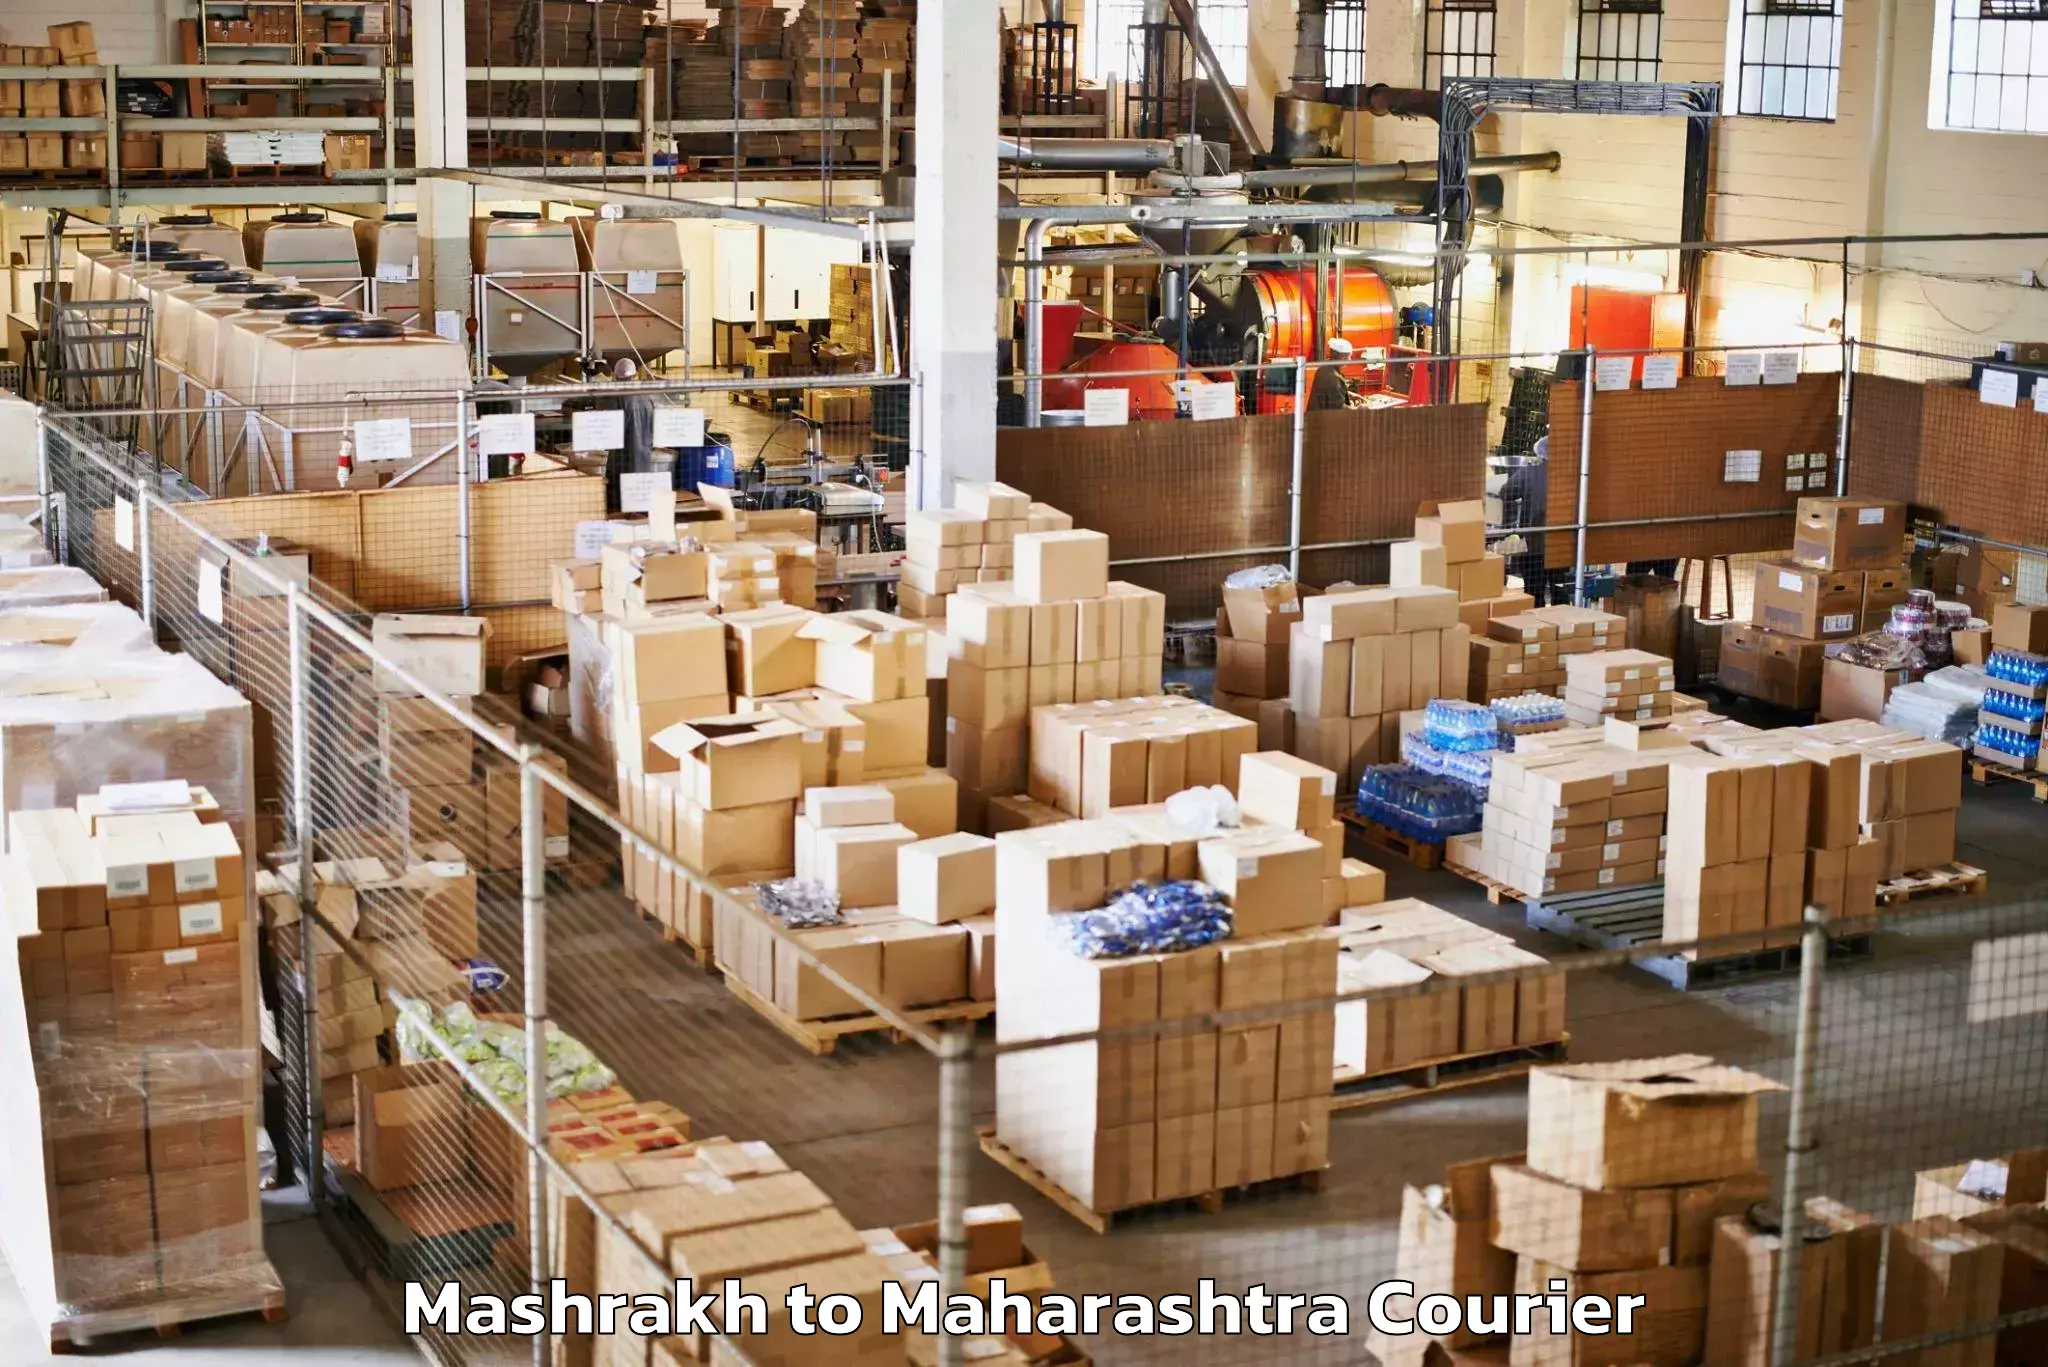 Holiday season luggage delivery Mashrakh to Maharashtra